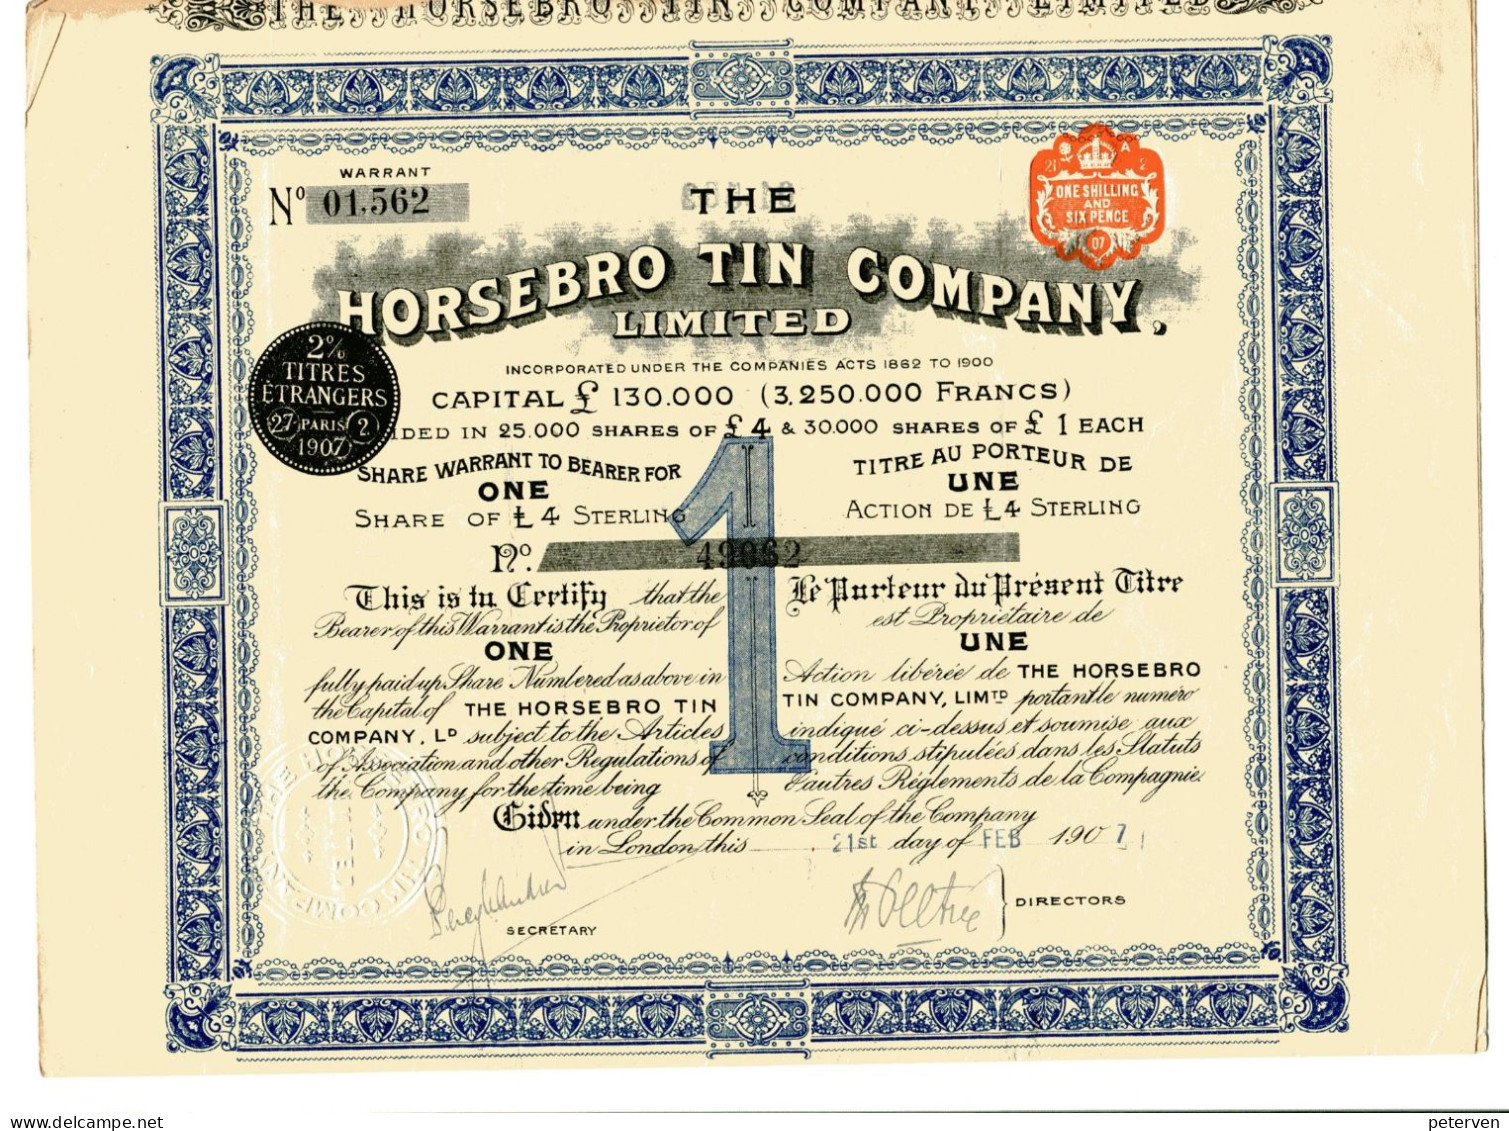 The HORSEBRO TIN COMPANY, Limited - Mines